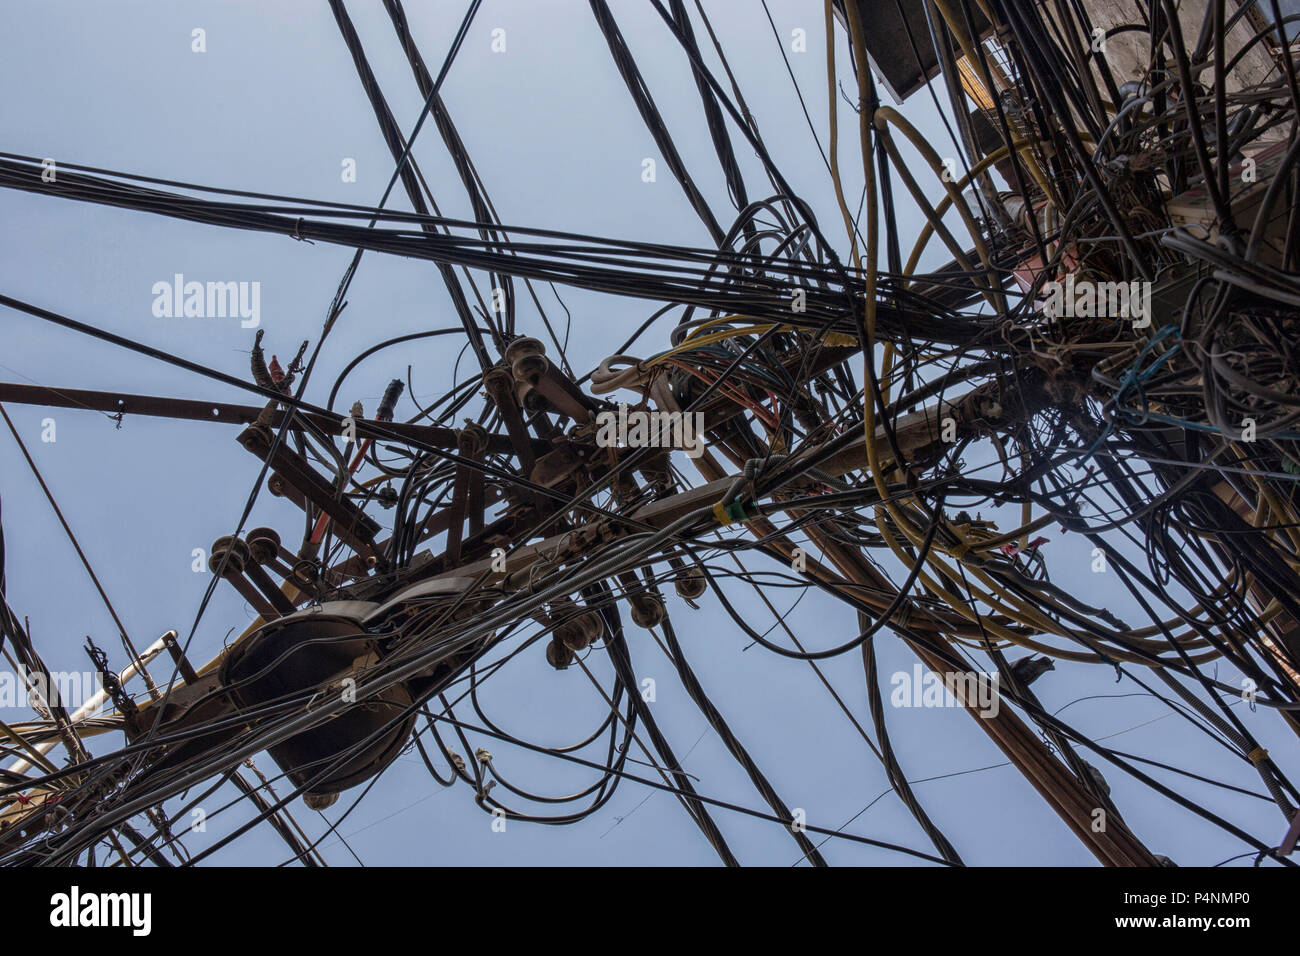 Drähte, die mit den elektrischen Stange befestigt, das Chaos der Kabel und Leitungen auf einem elektrischen Pol in Neu Dehli, Indien, Konzept der Elektrizität Stockfoto